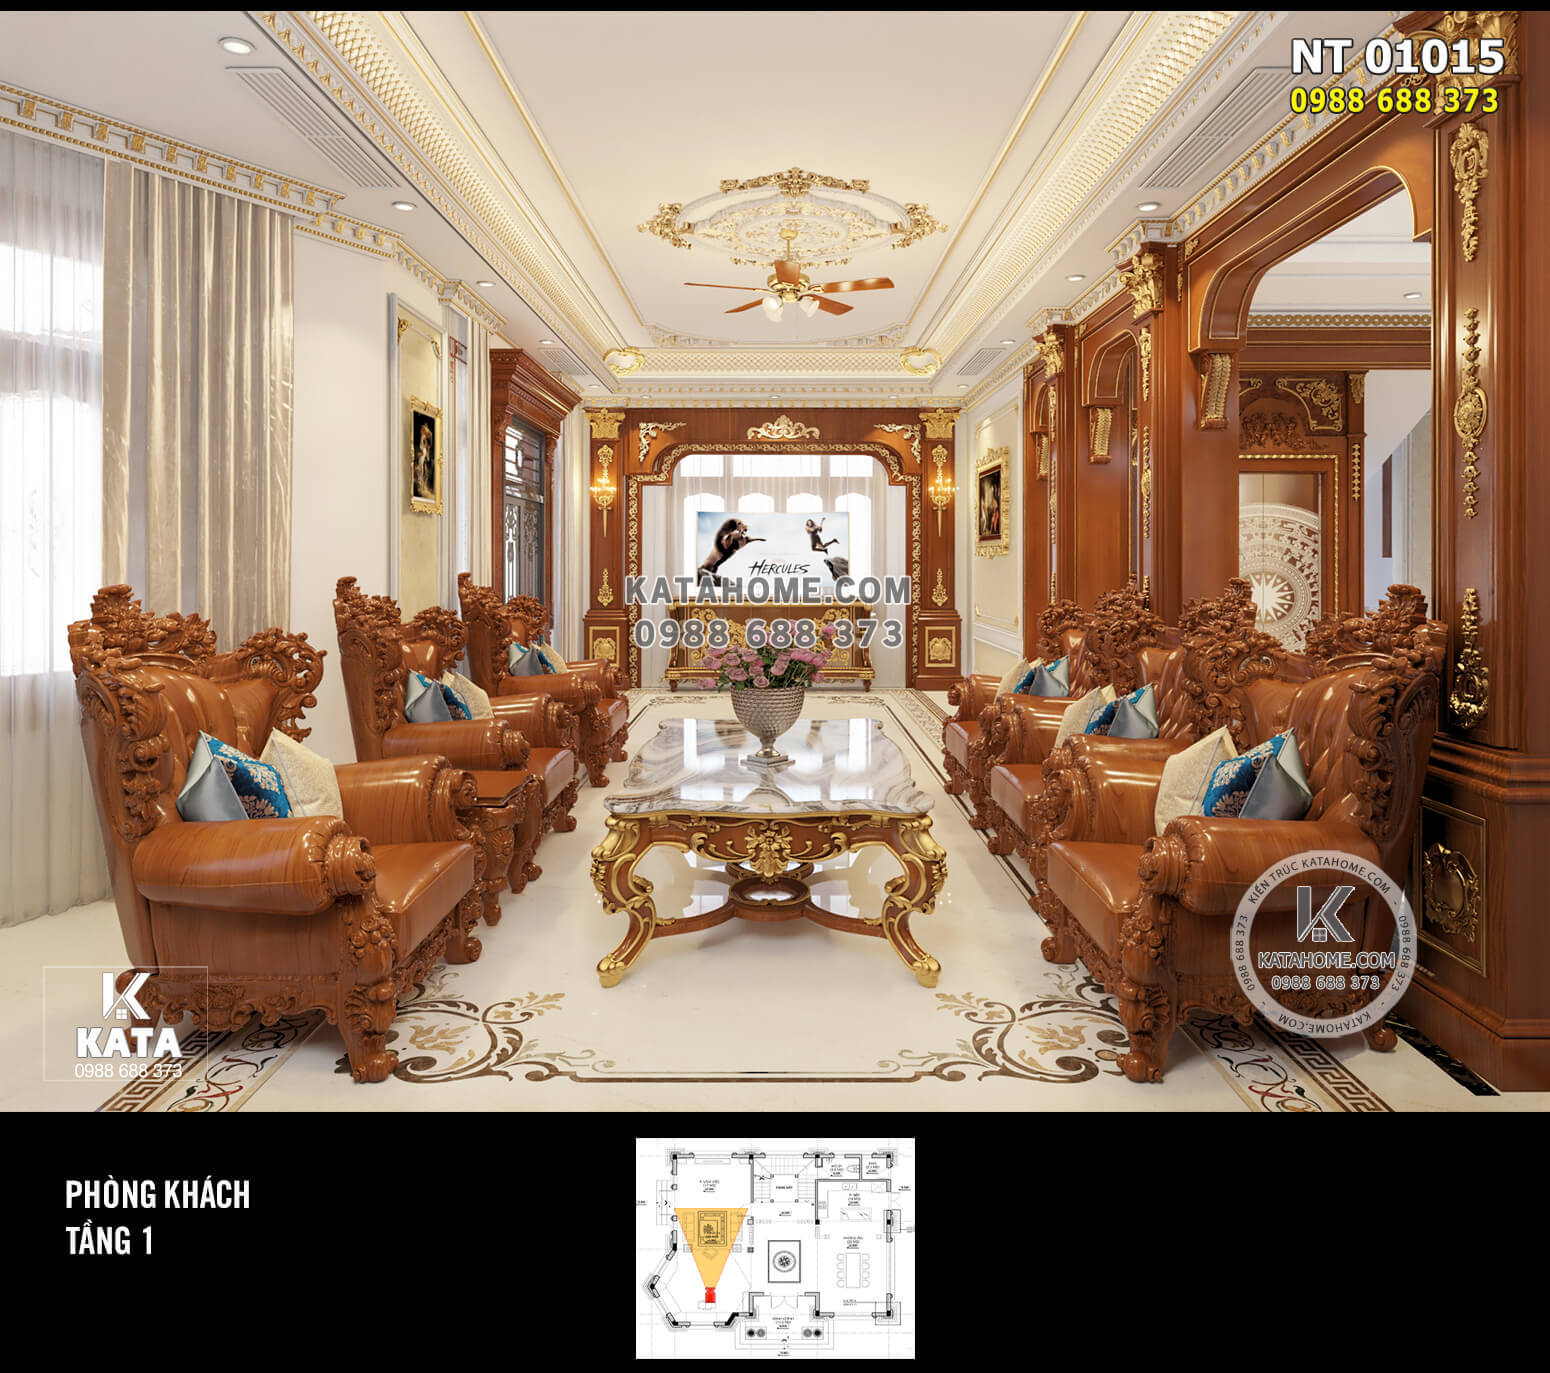 Thiết kế nội thất tân cổ điển gỗ gõ đỏ đẹp đẳng cấp: KATA – 01015